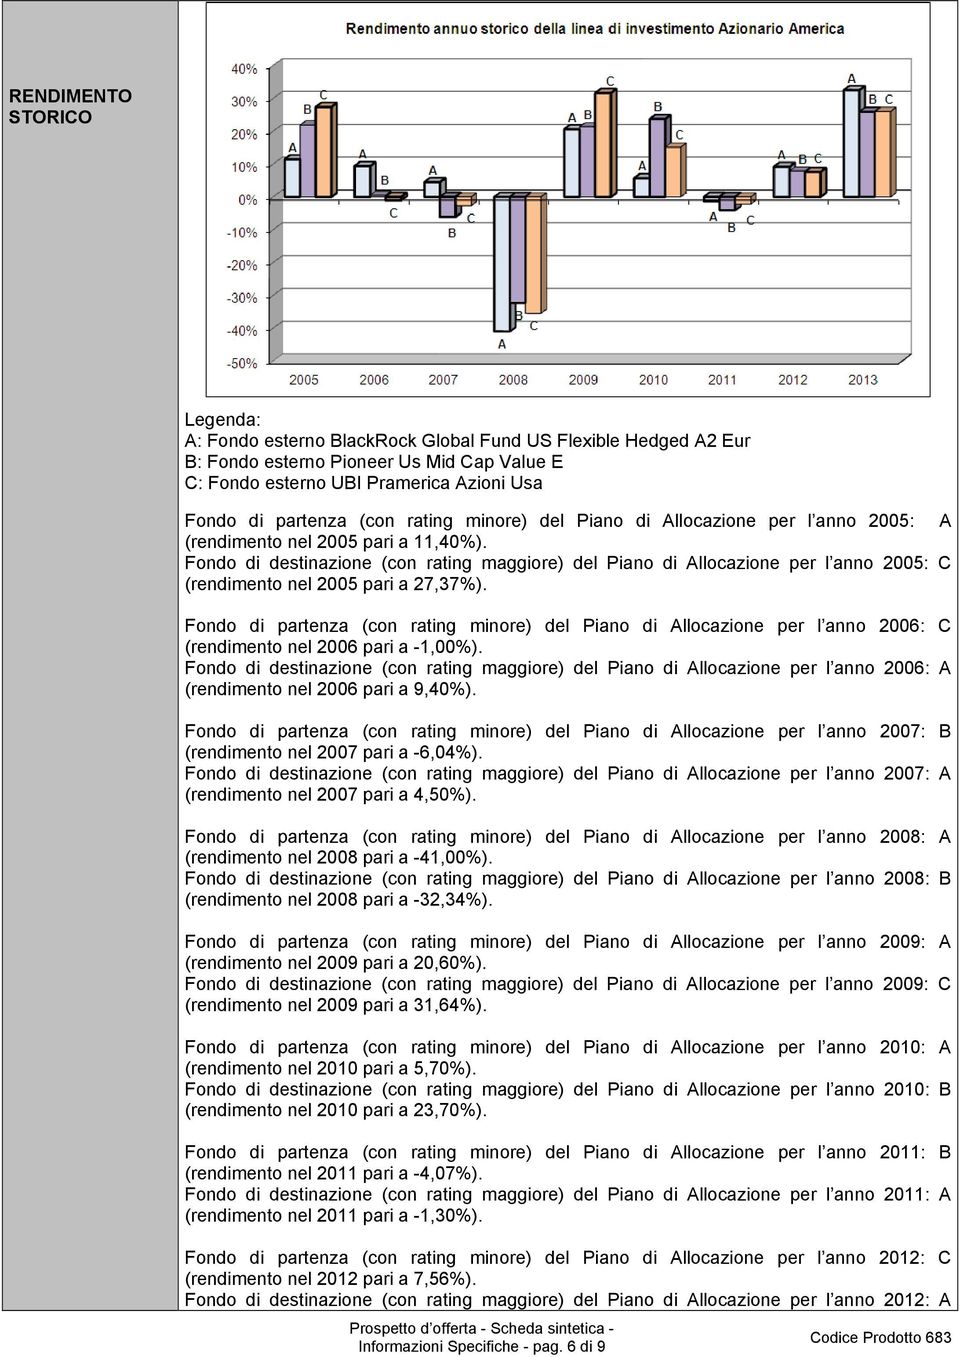 Fondo di destinazione (con rating maggiore) del Piano di Allocazione per l anno 2005: C (rendimento nel 2005 pari a 27,37%).